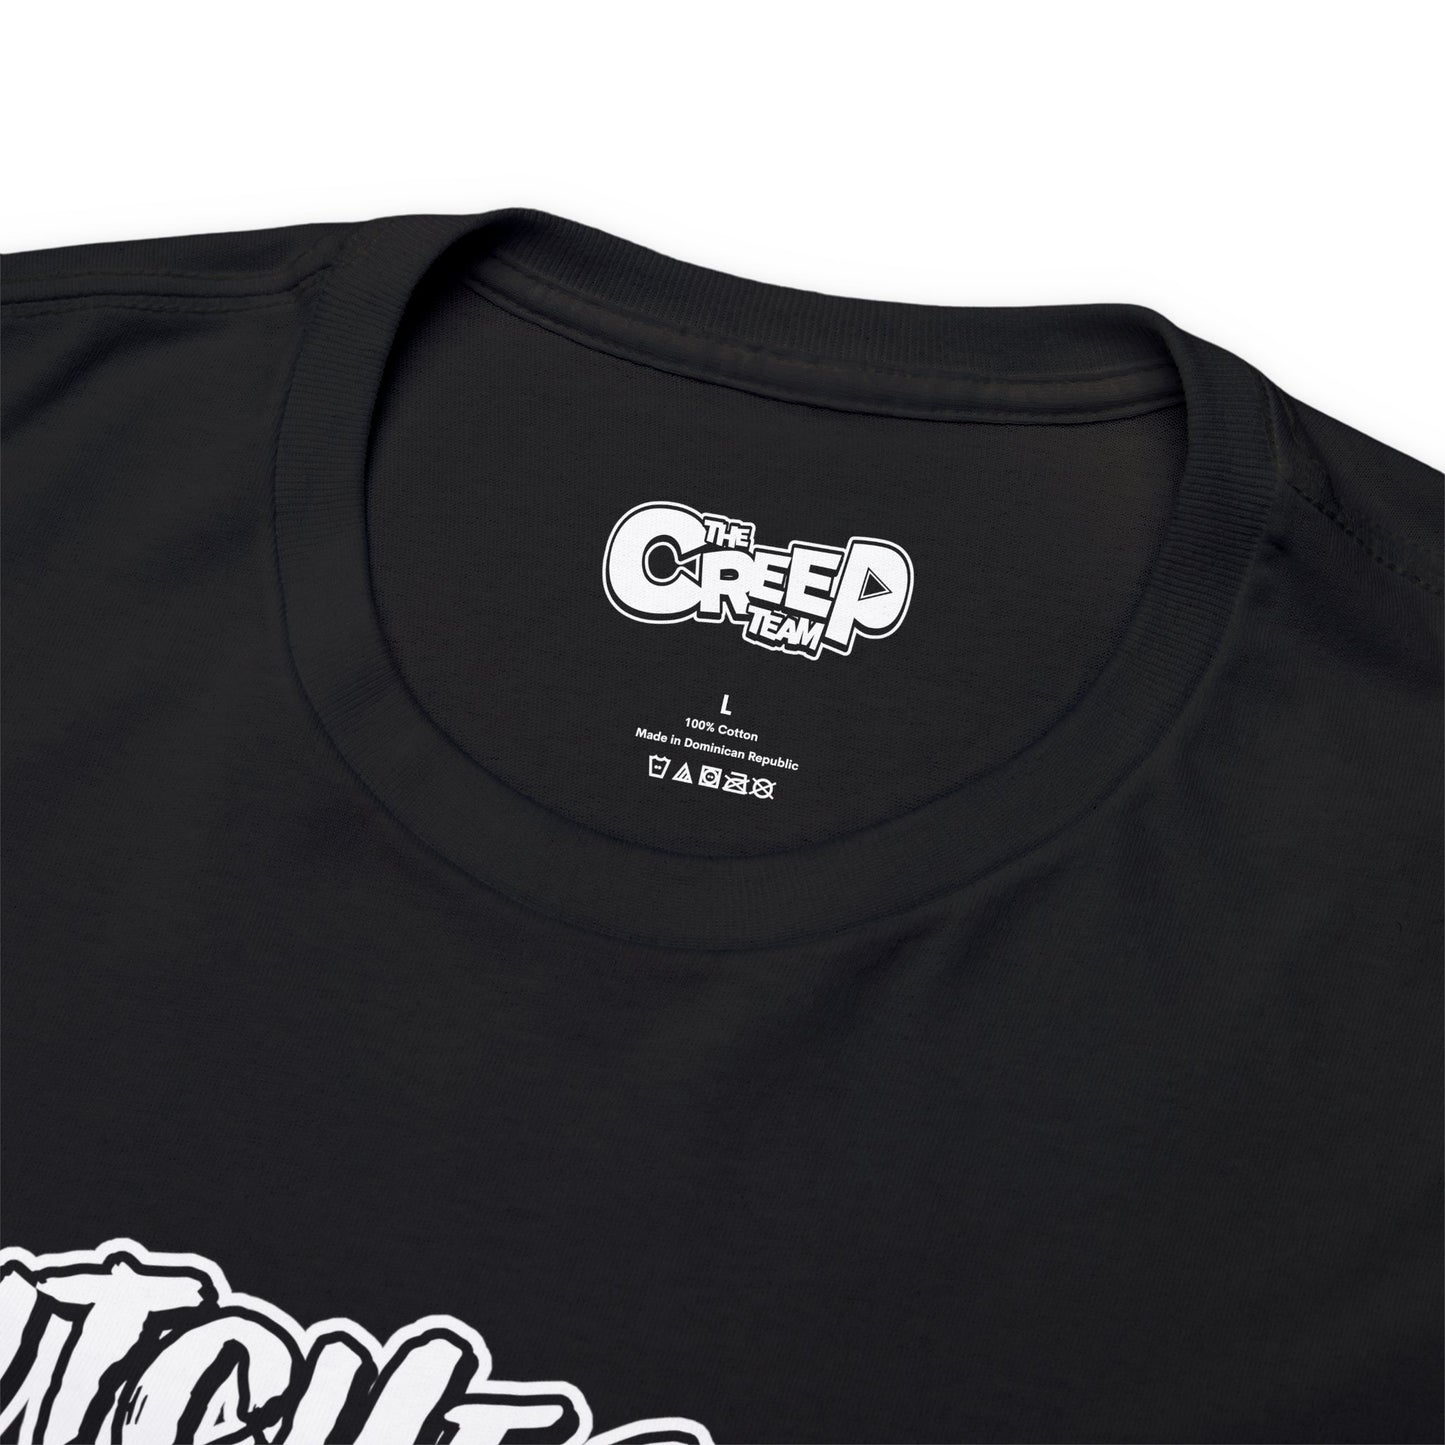 Love The Creep Team T-Shirt